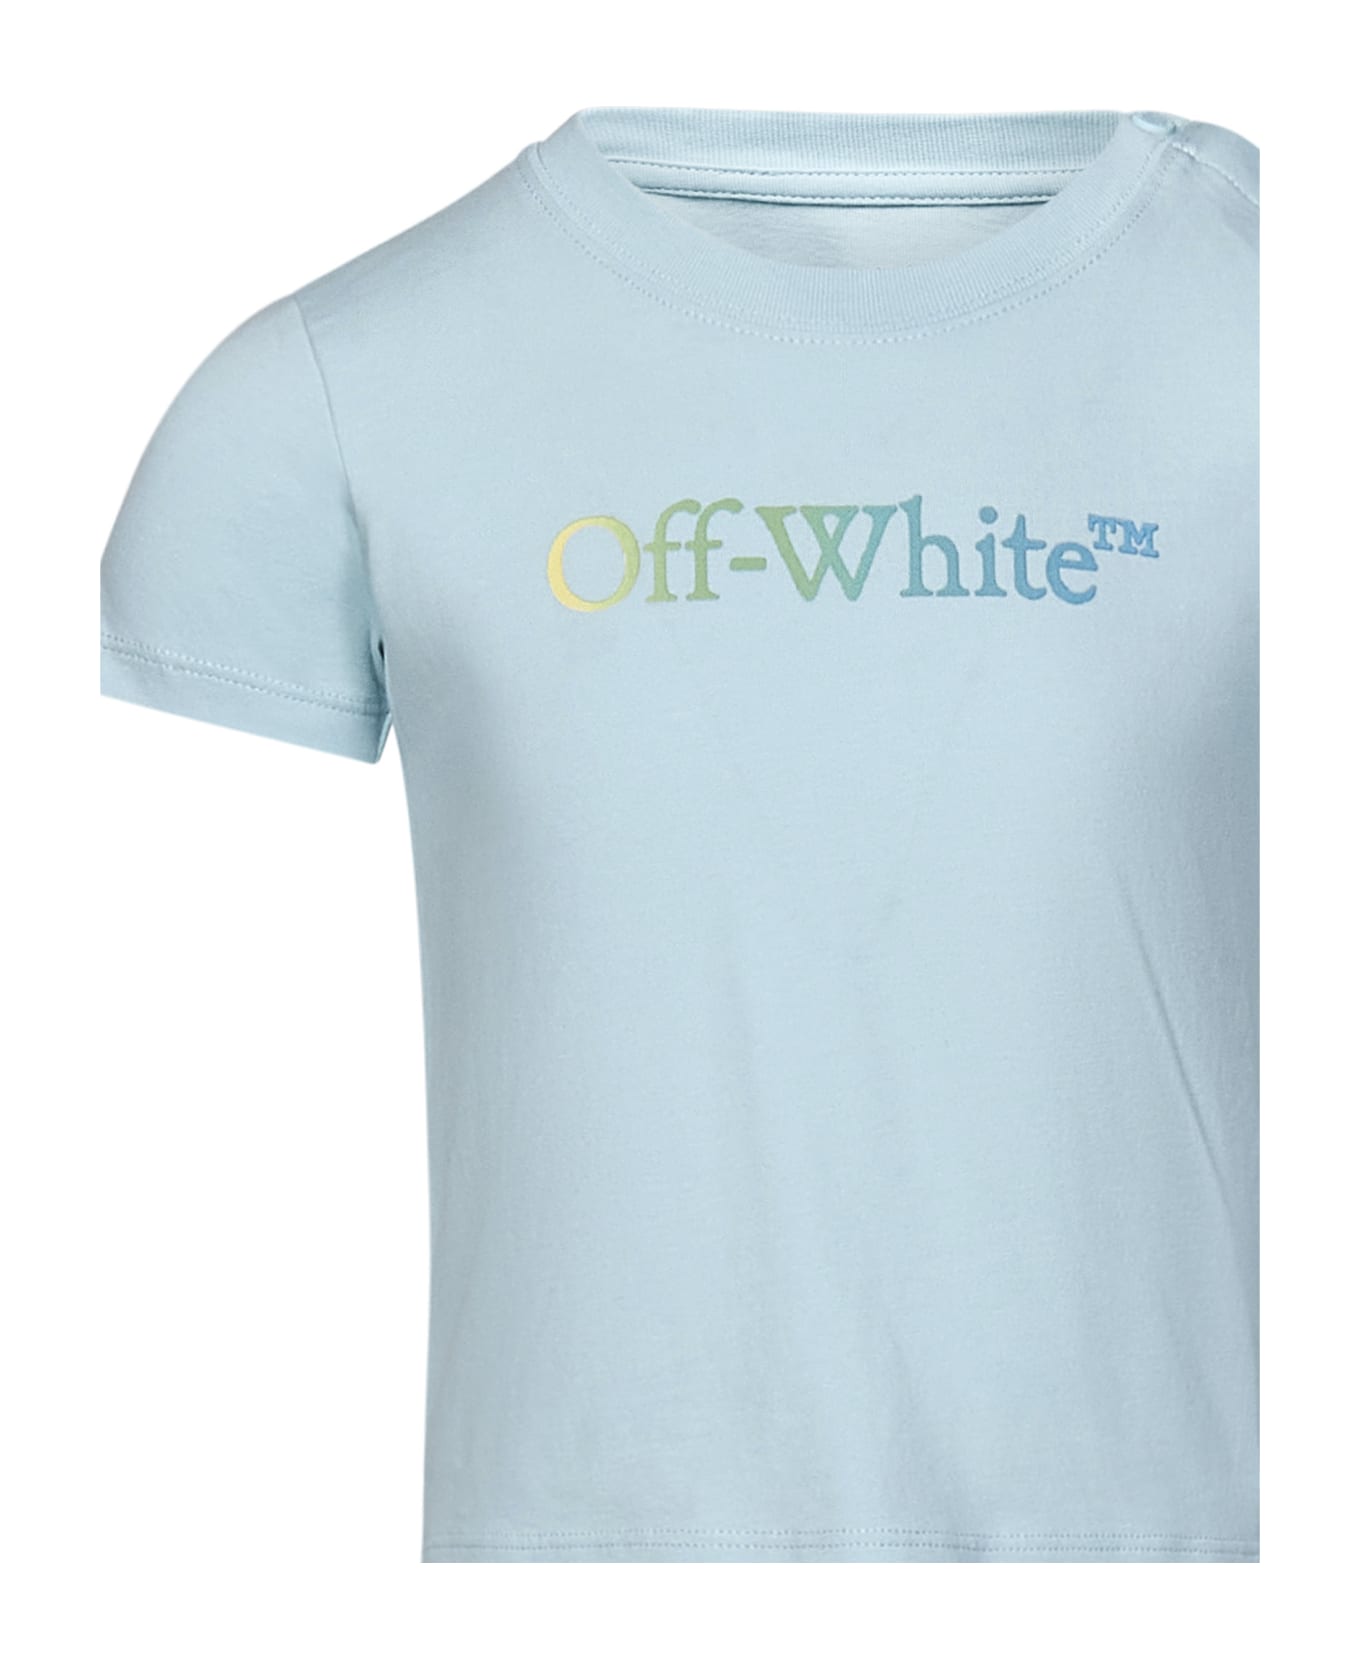 Off-White T-shirt - Light blue